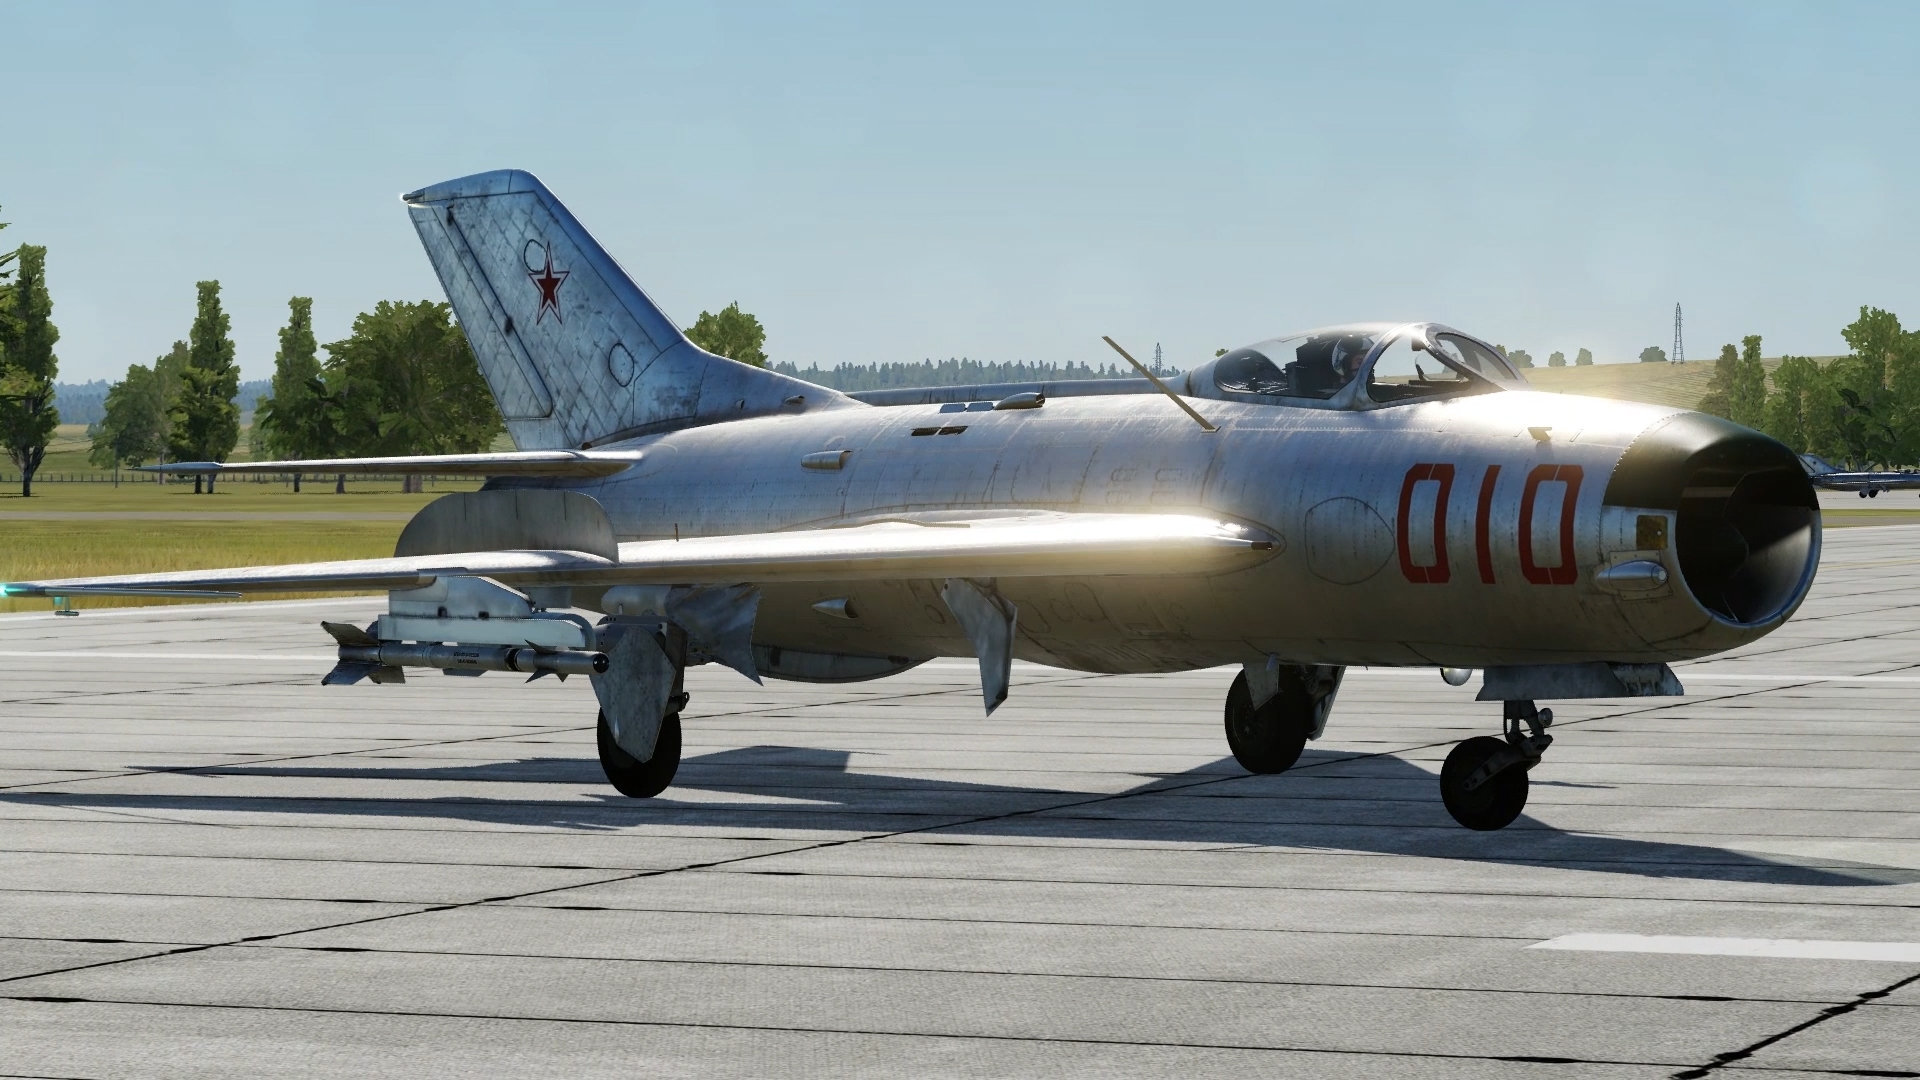 Истребитель МиГ-19П в симуляторе DCS World. Часть 1.